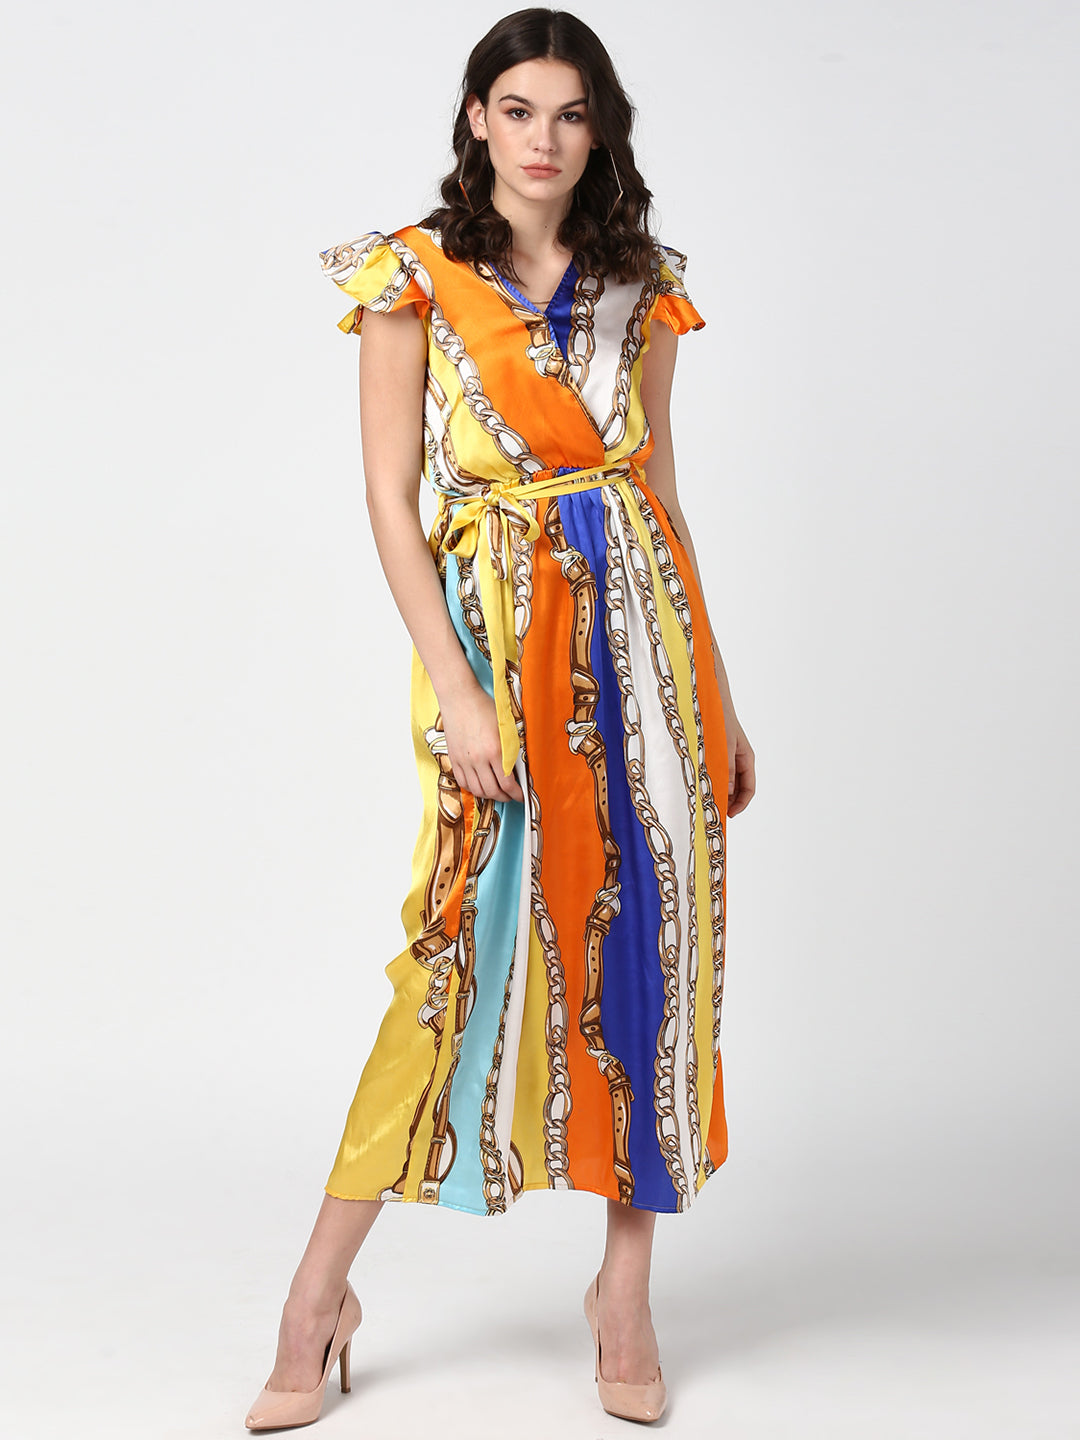 Women's Chain Print Multi Colored Satin Maxi Dress